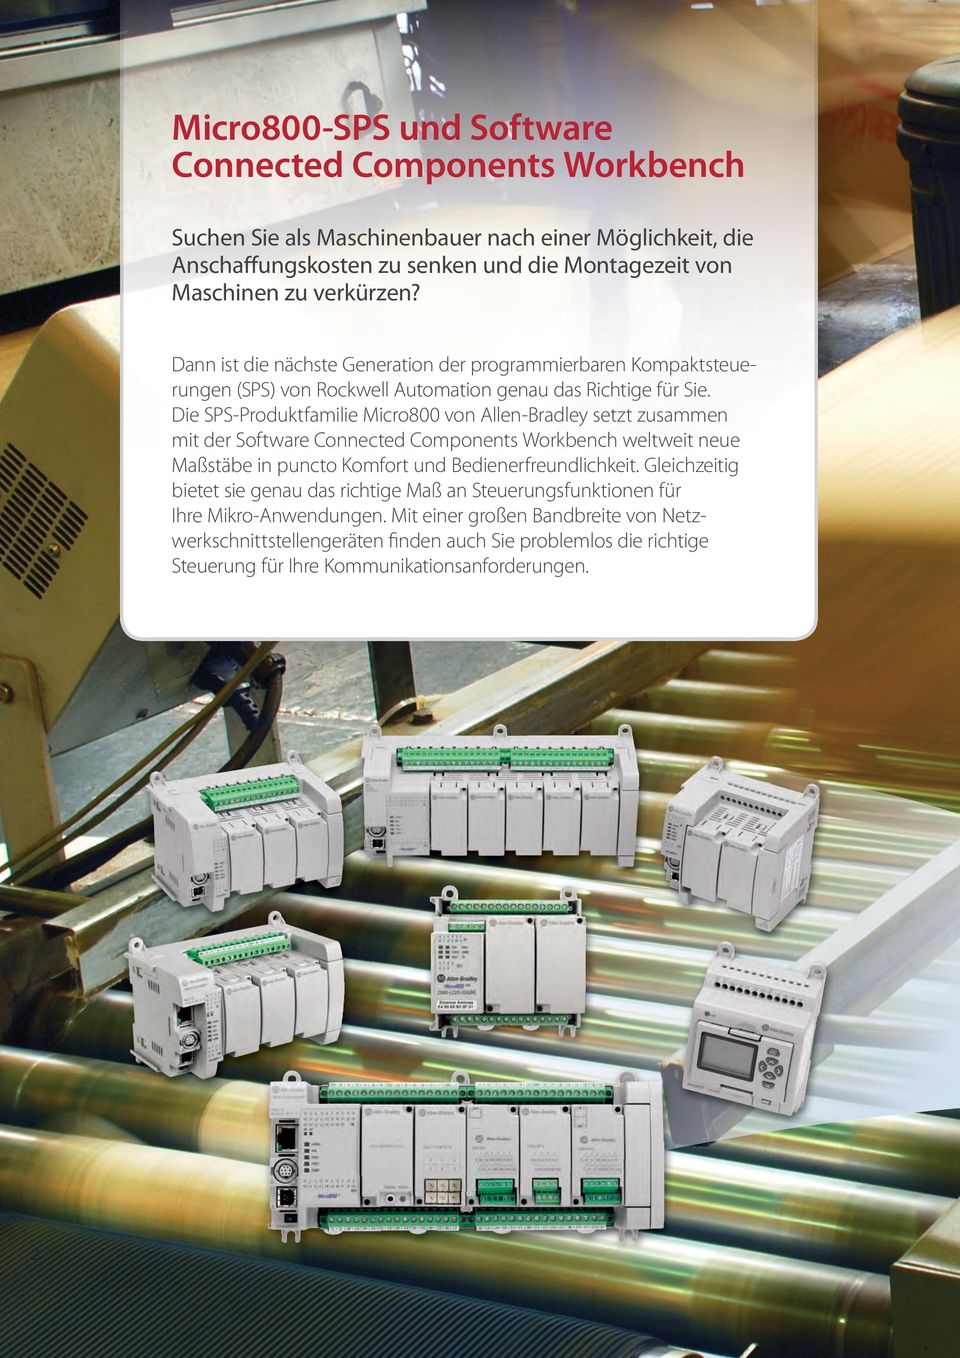 Die SPS-Produktfamilie Micro800 von Allen-Bradley setzt zusammen mit der Software Connected Components Workbench weltweit neue Maßstäbe in puncto Komfort und Bedienerfreundlichkeit.